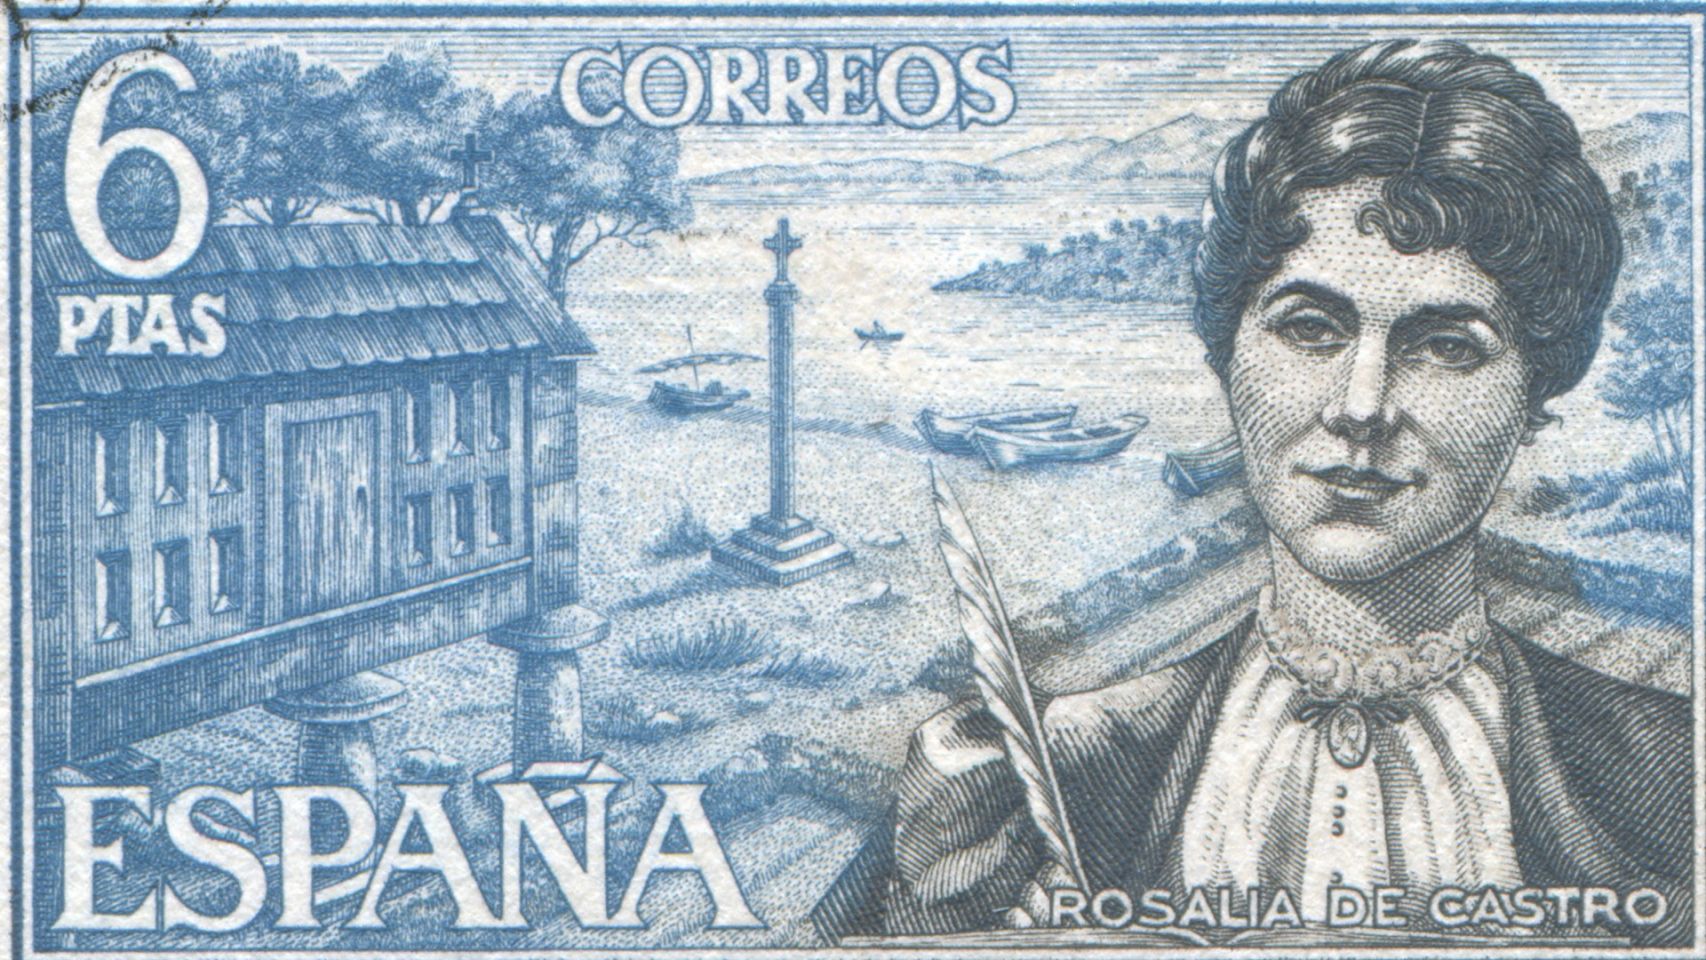 Sello dedicado por Correos a Rosalía de Castro en el año 1968 (Shutterstock)